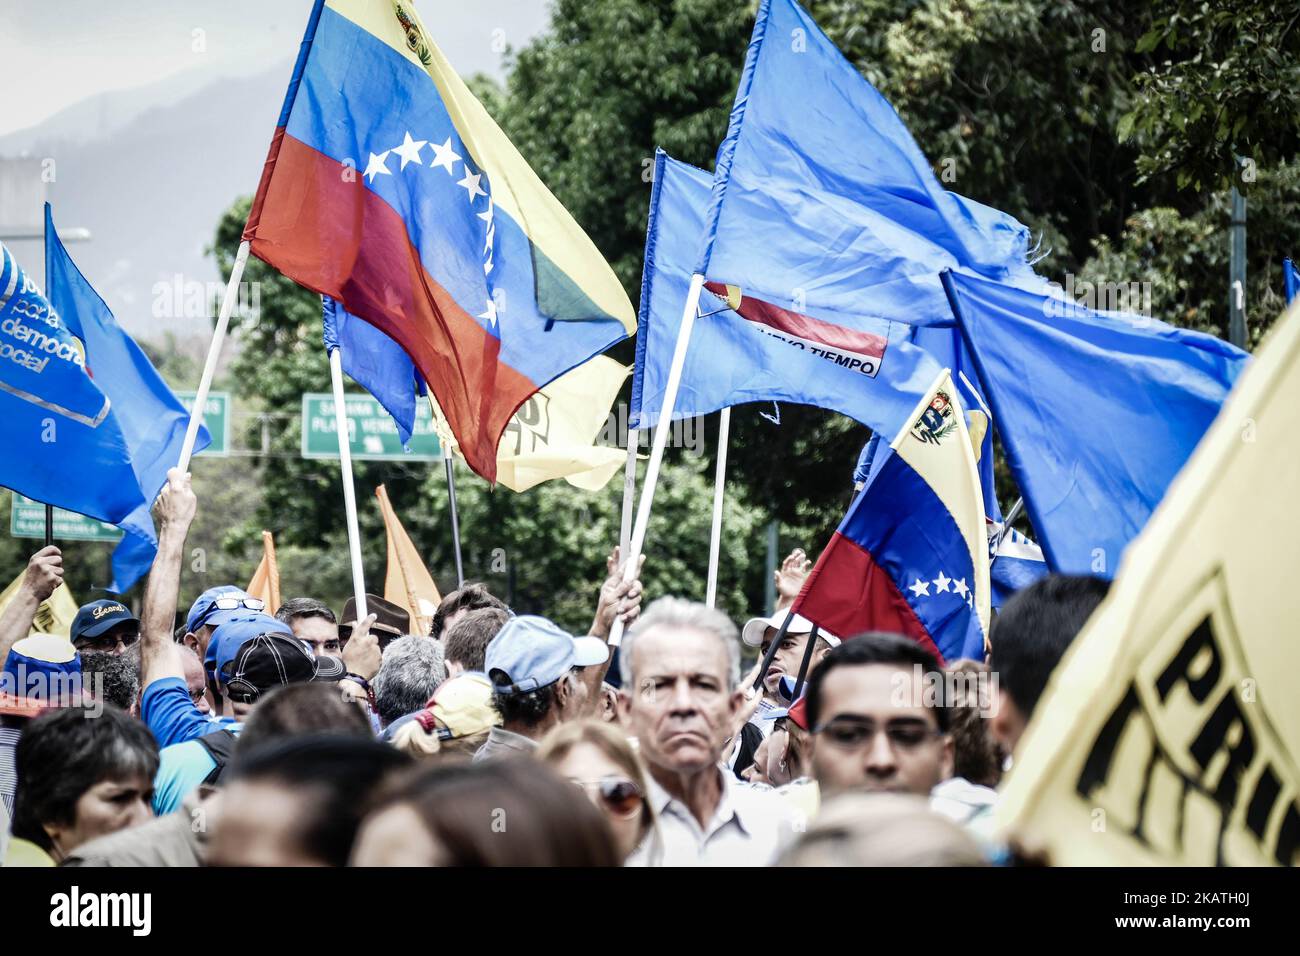 Des manifestants sont descendus dans les rues de Caracas pendant plusieurs mois pour protester contre le gouvernement du président Nicolas Maduro. Selon des organisations à but non lucratif, 129 personnes ont perdu la vie lors des manifestations de 2017. (Photo par Roman Camacho/NurPhoto) Banque D'Images